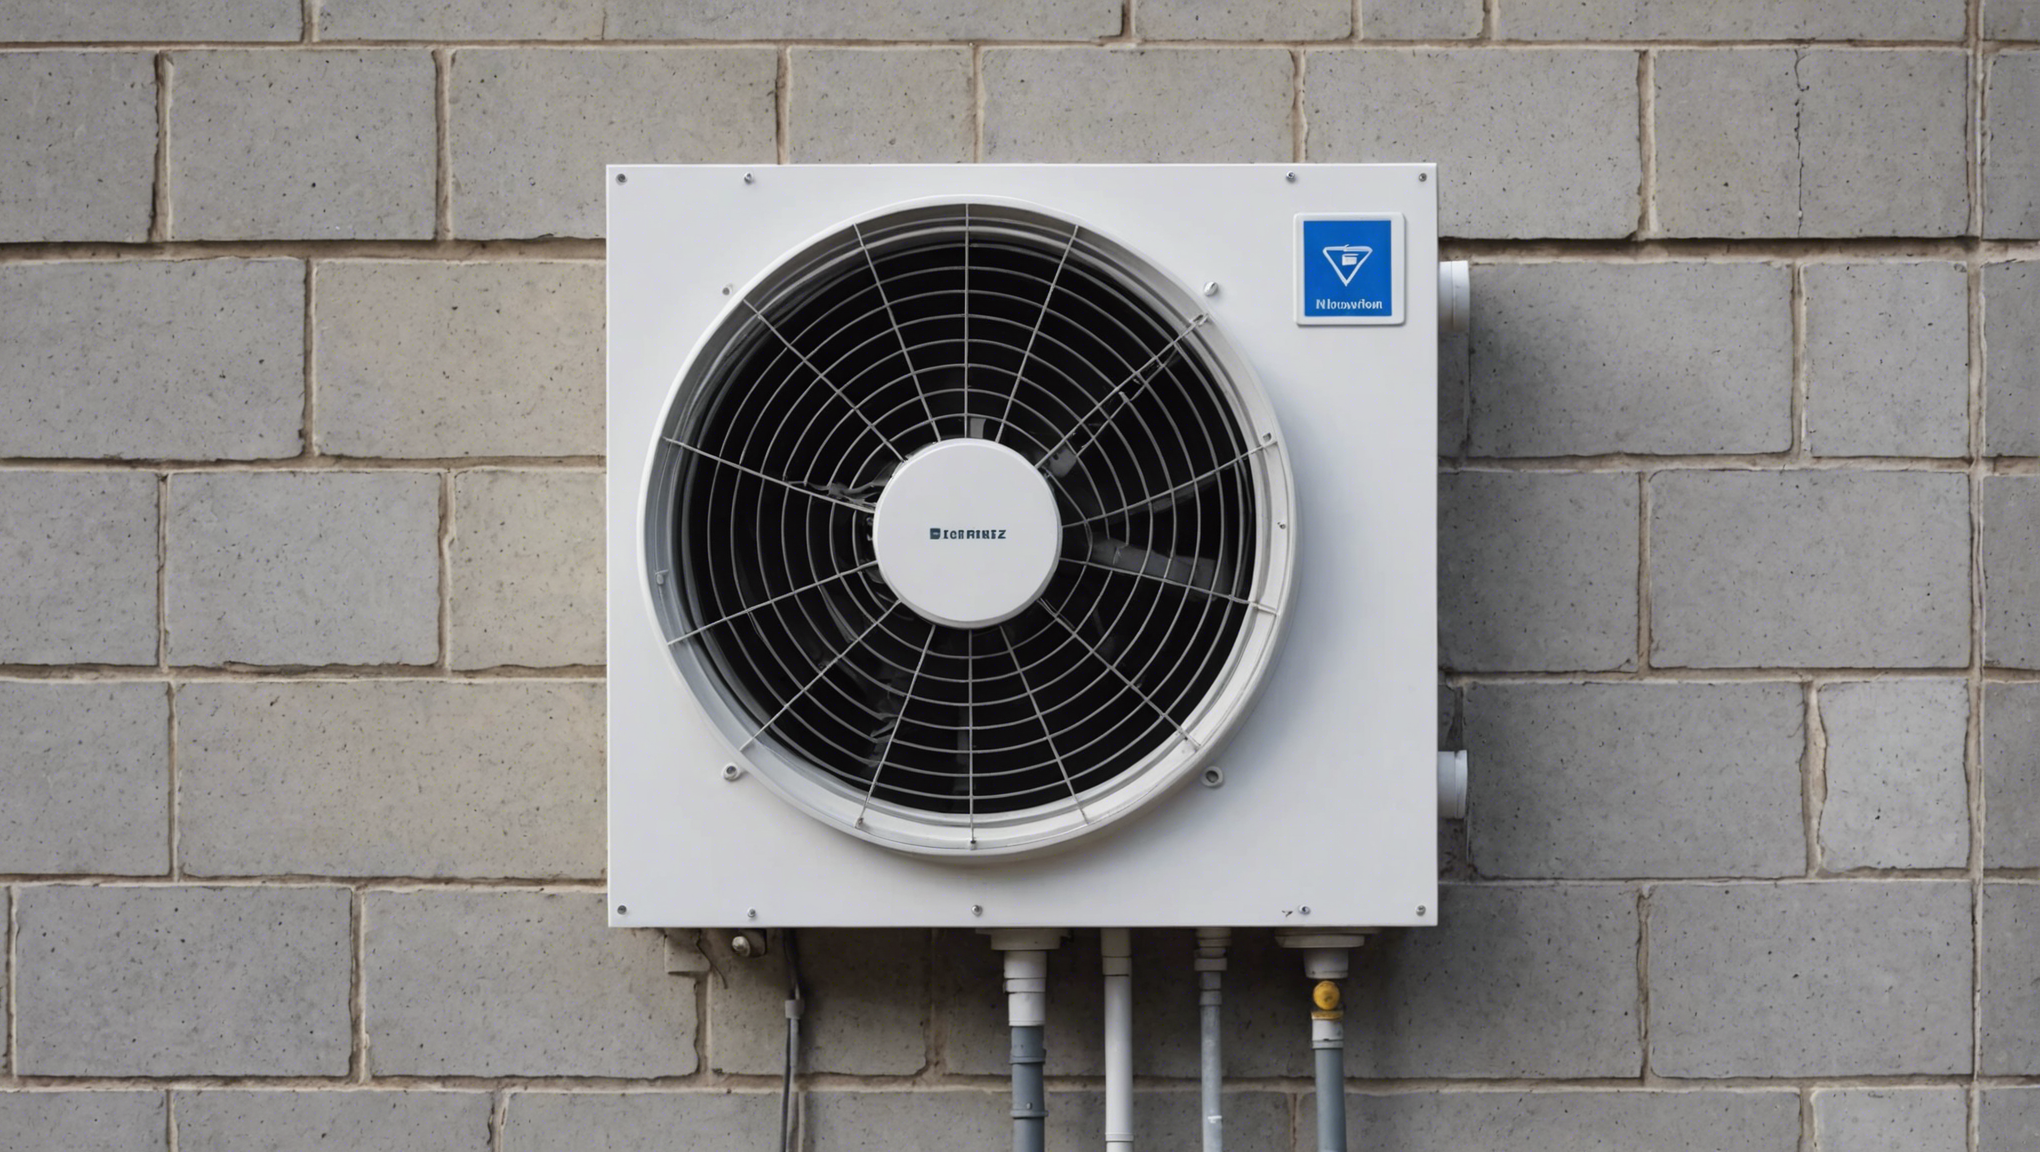 découvrez l'importance de la vérification de la ventilation pour assurer un environnement sain et une bonne qualité de l'air dans votre espace. trouvez des conseils et des directives pour une ventilation efficace.